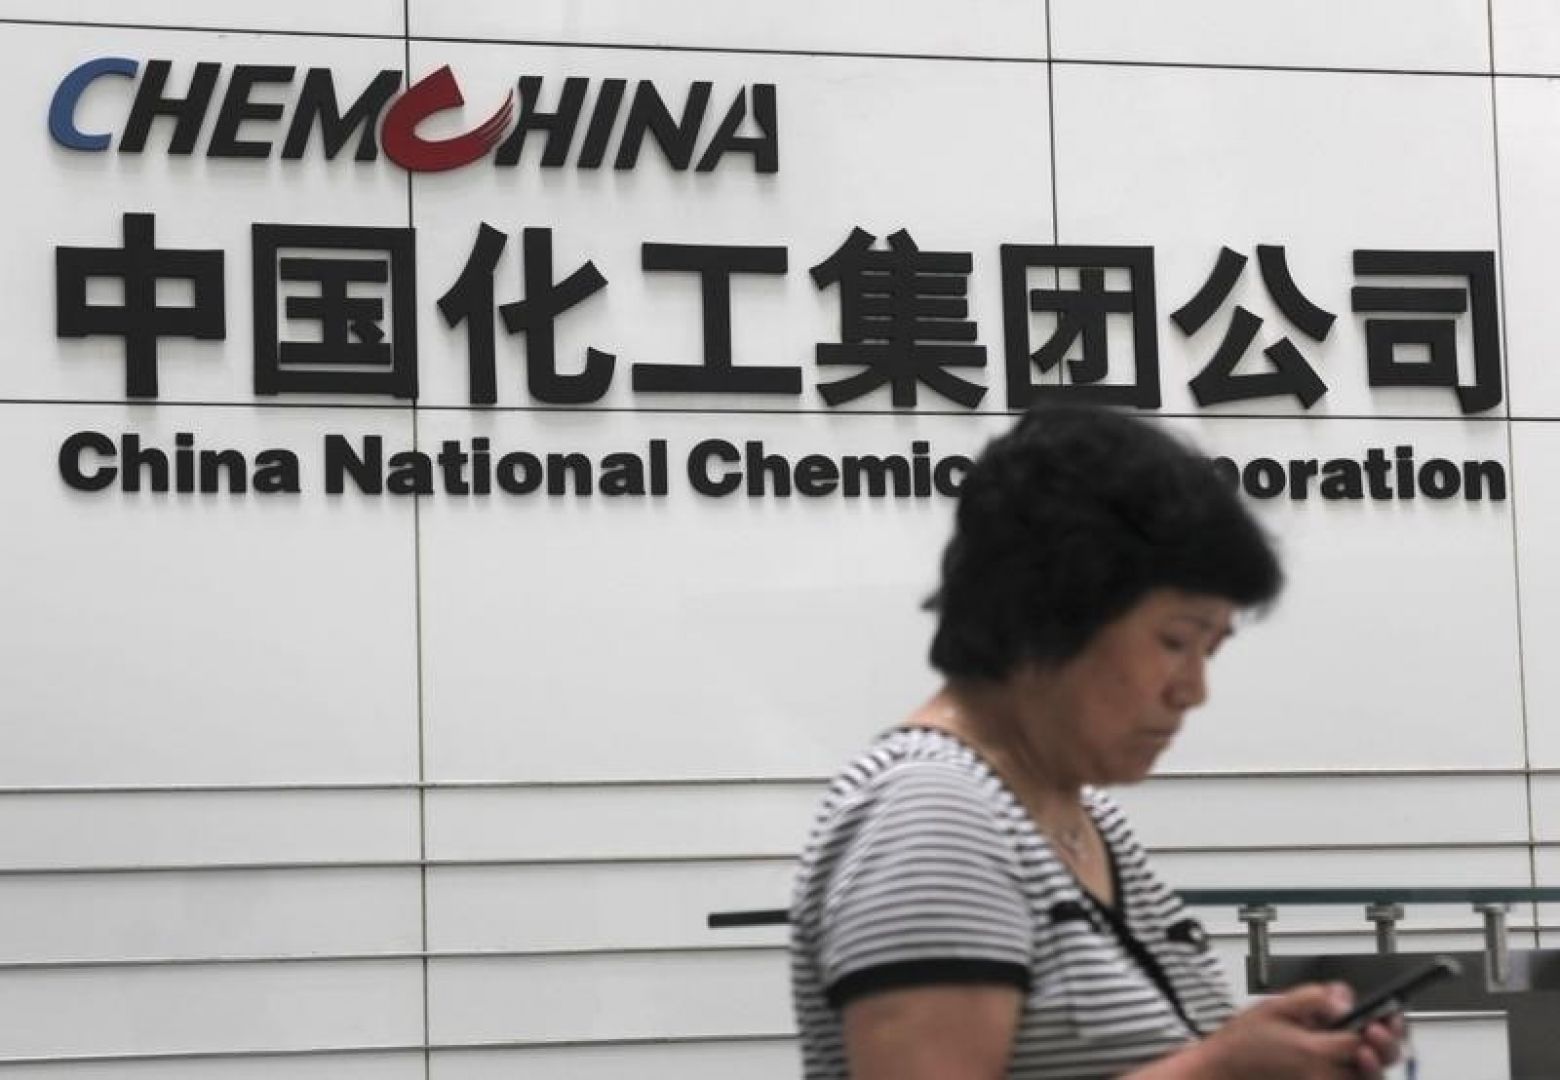 ChemChina este aproape de cea mai mare achiziţie făcută vreodată de o companie chineză - 43 mld.dolari